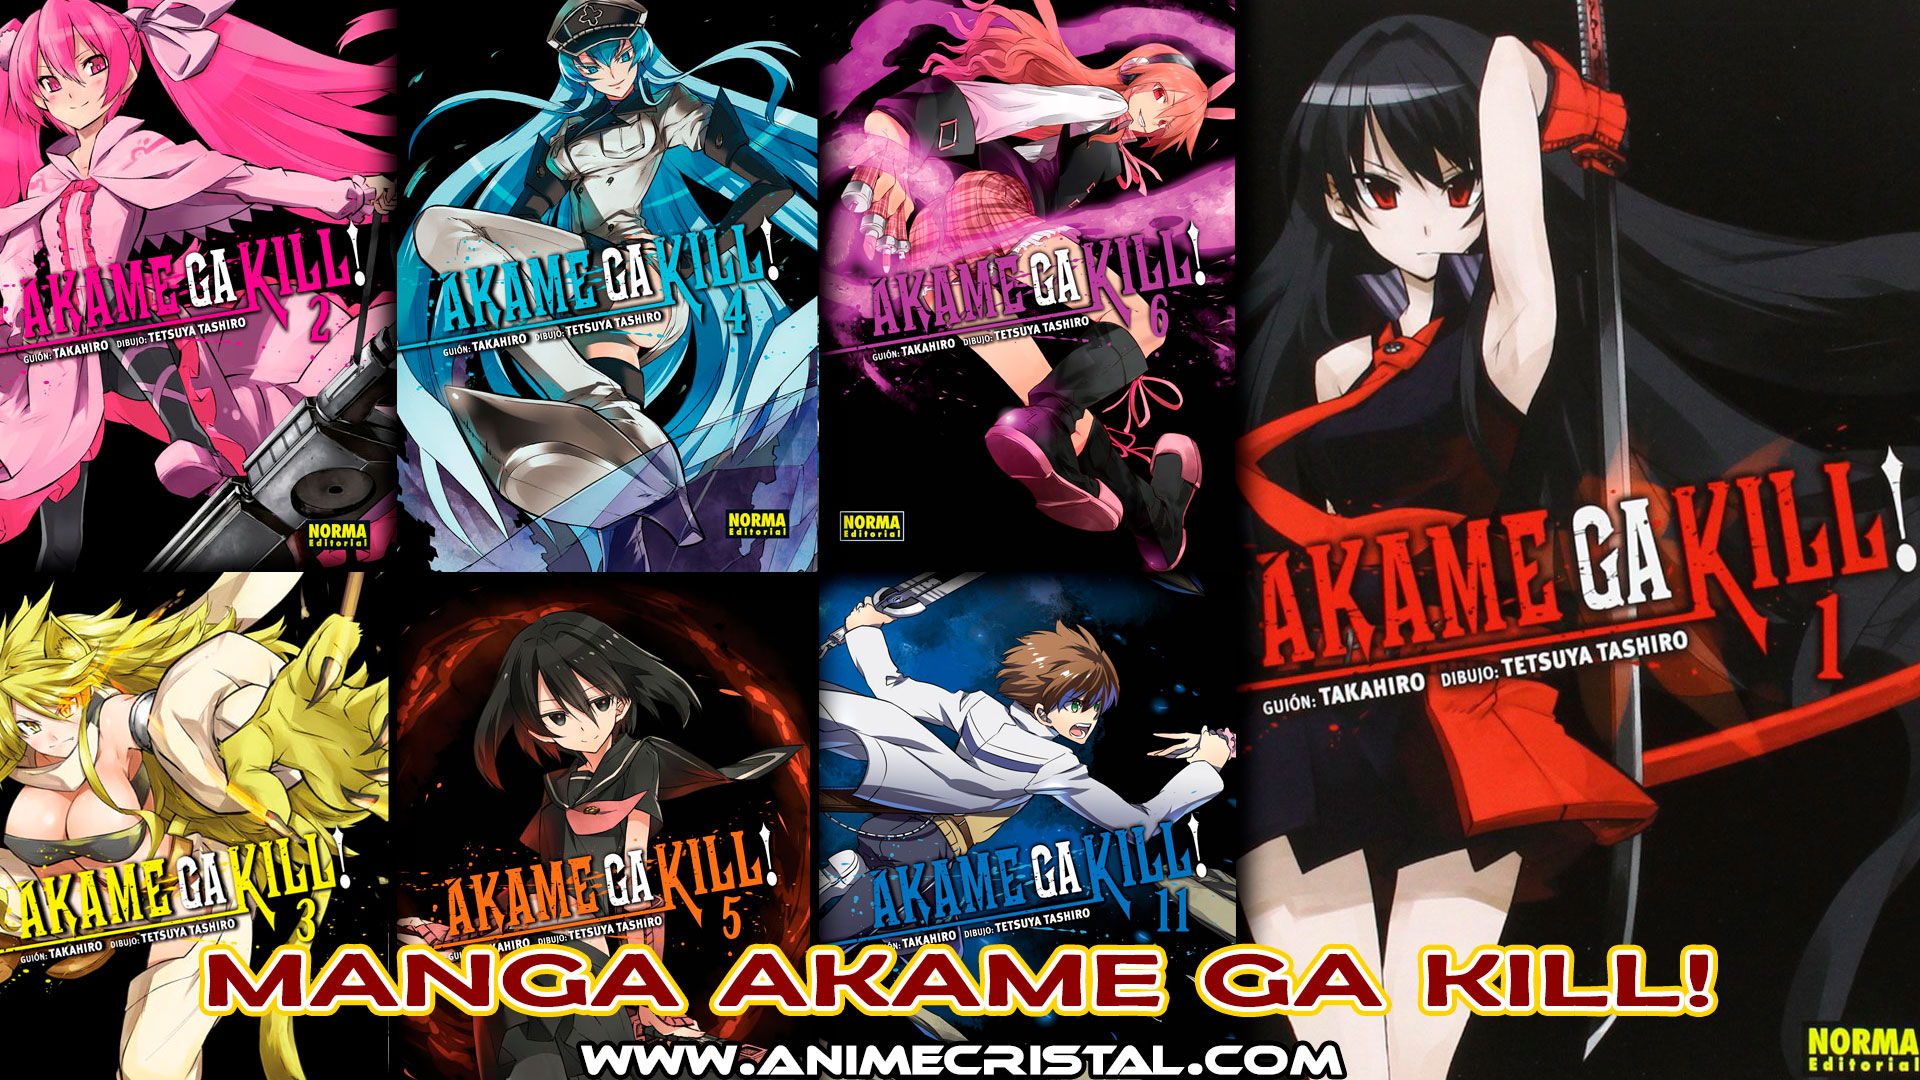 Manga Akame ga Kill!